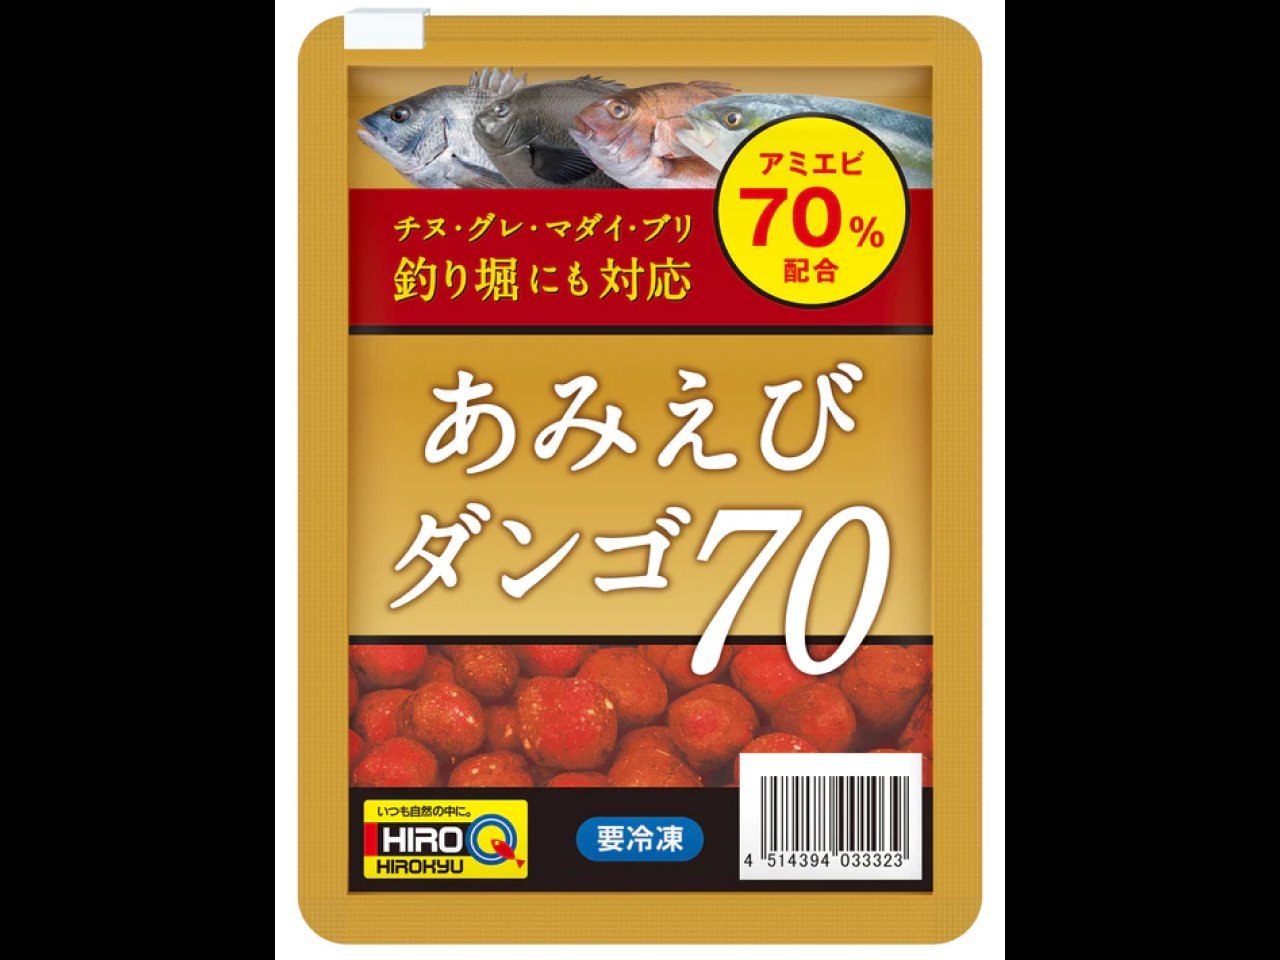 【新製品速報】ヒロキューからあみえびダンゴ70が発売決定！